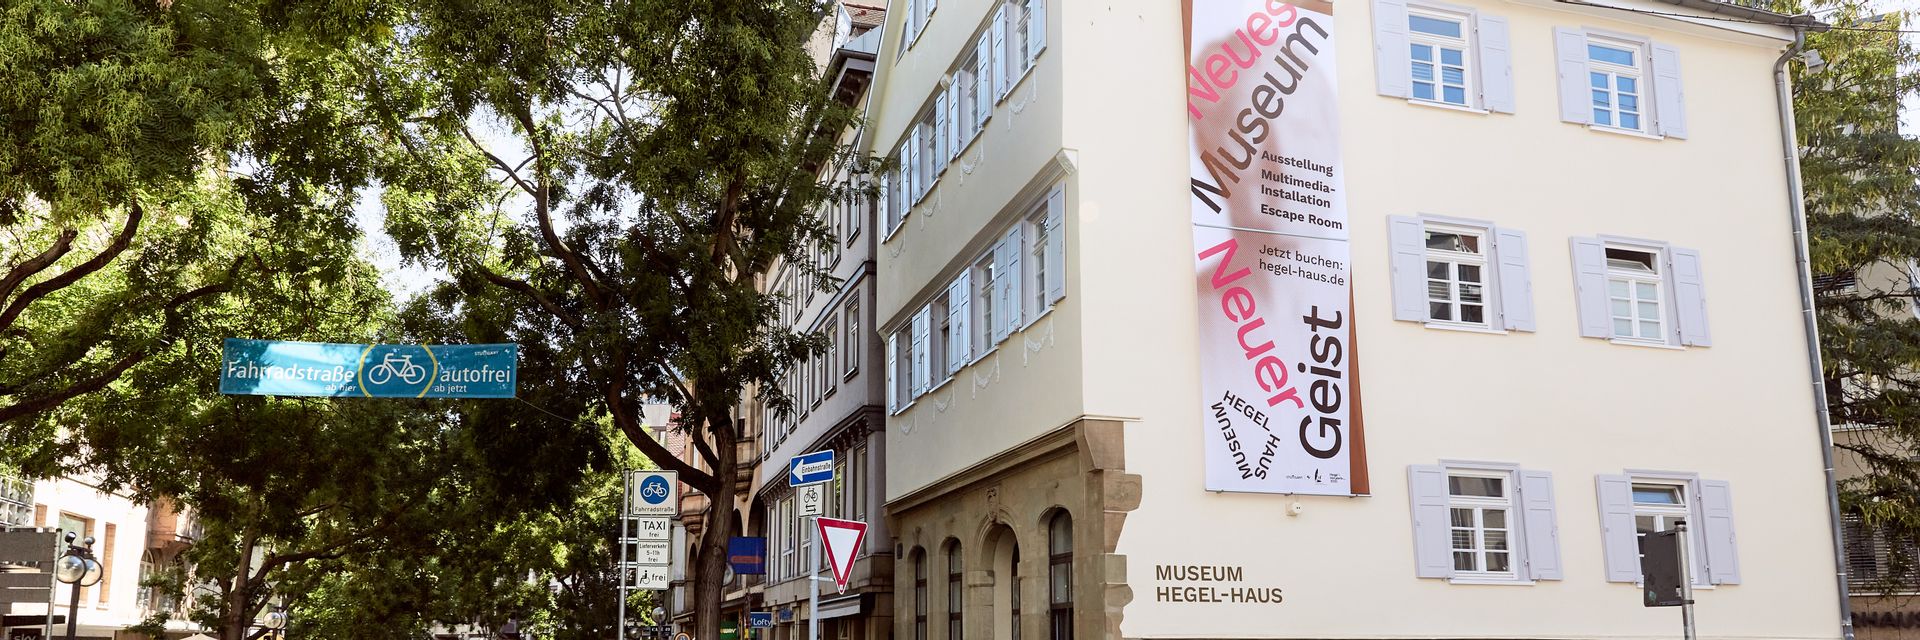 Le musée de la maison Hegel